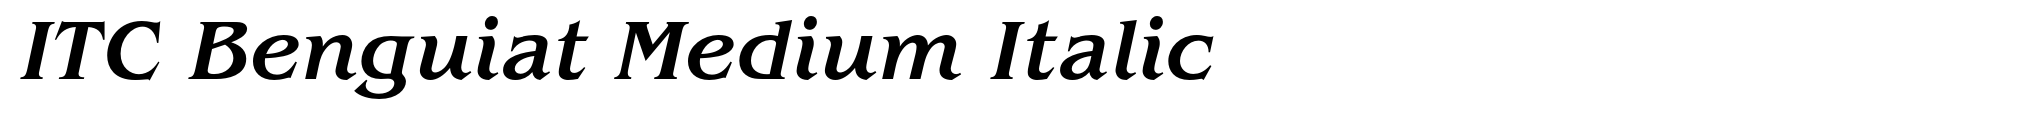 ITC Benguiat Medium Italic image